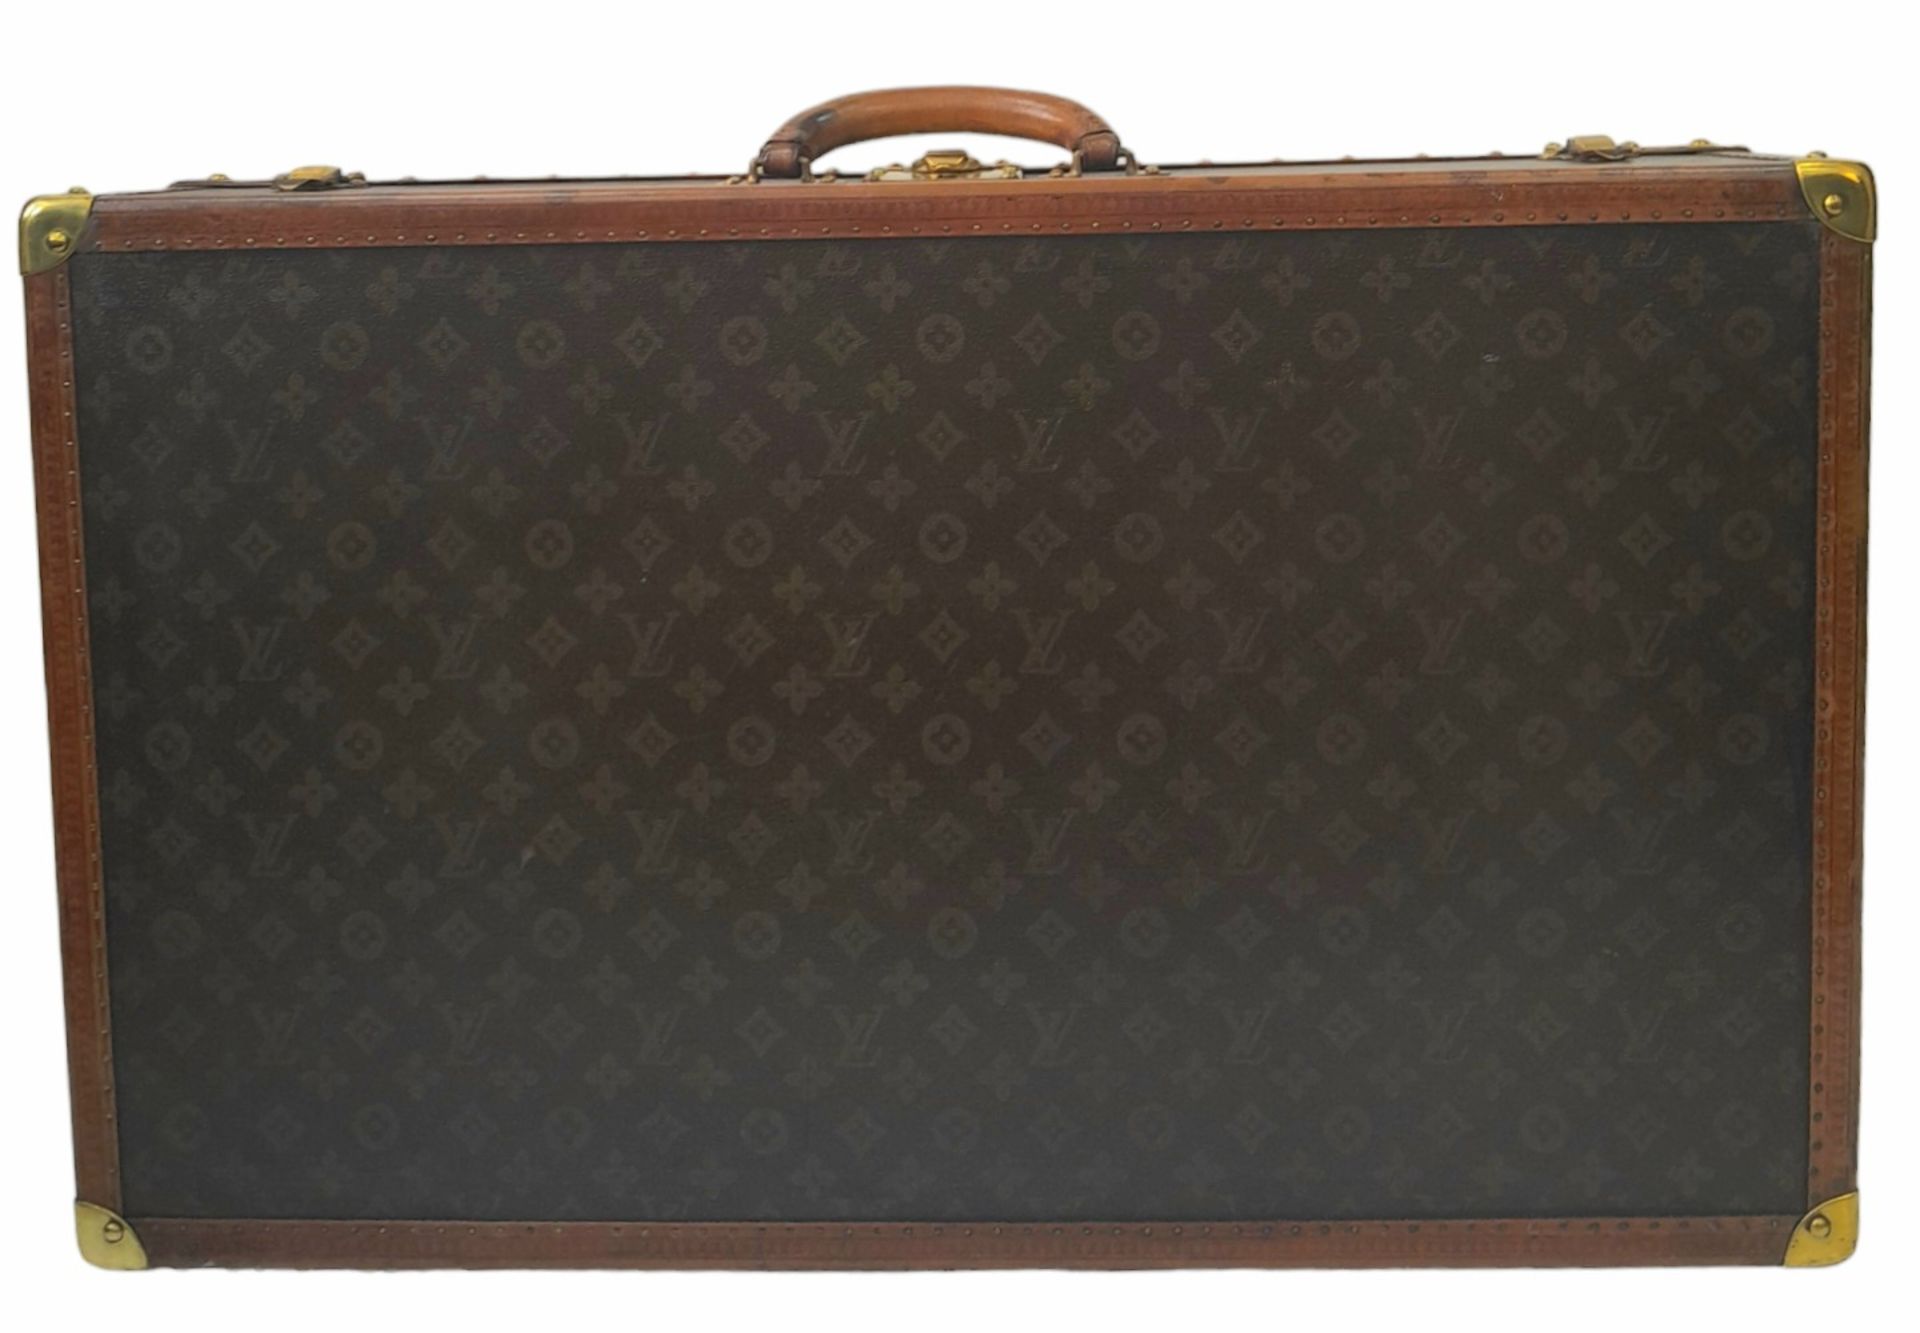 A Vintage Possibly Antique Louis Vuitton Trunk/Hard Suitcase. Canvas monogram LV exterior with - Bild 2 aus 16